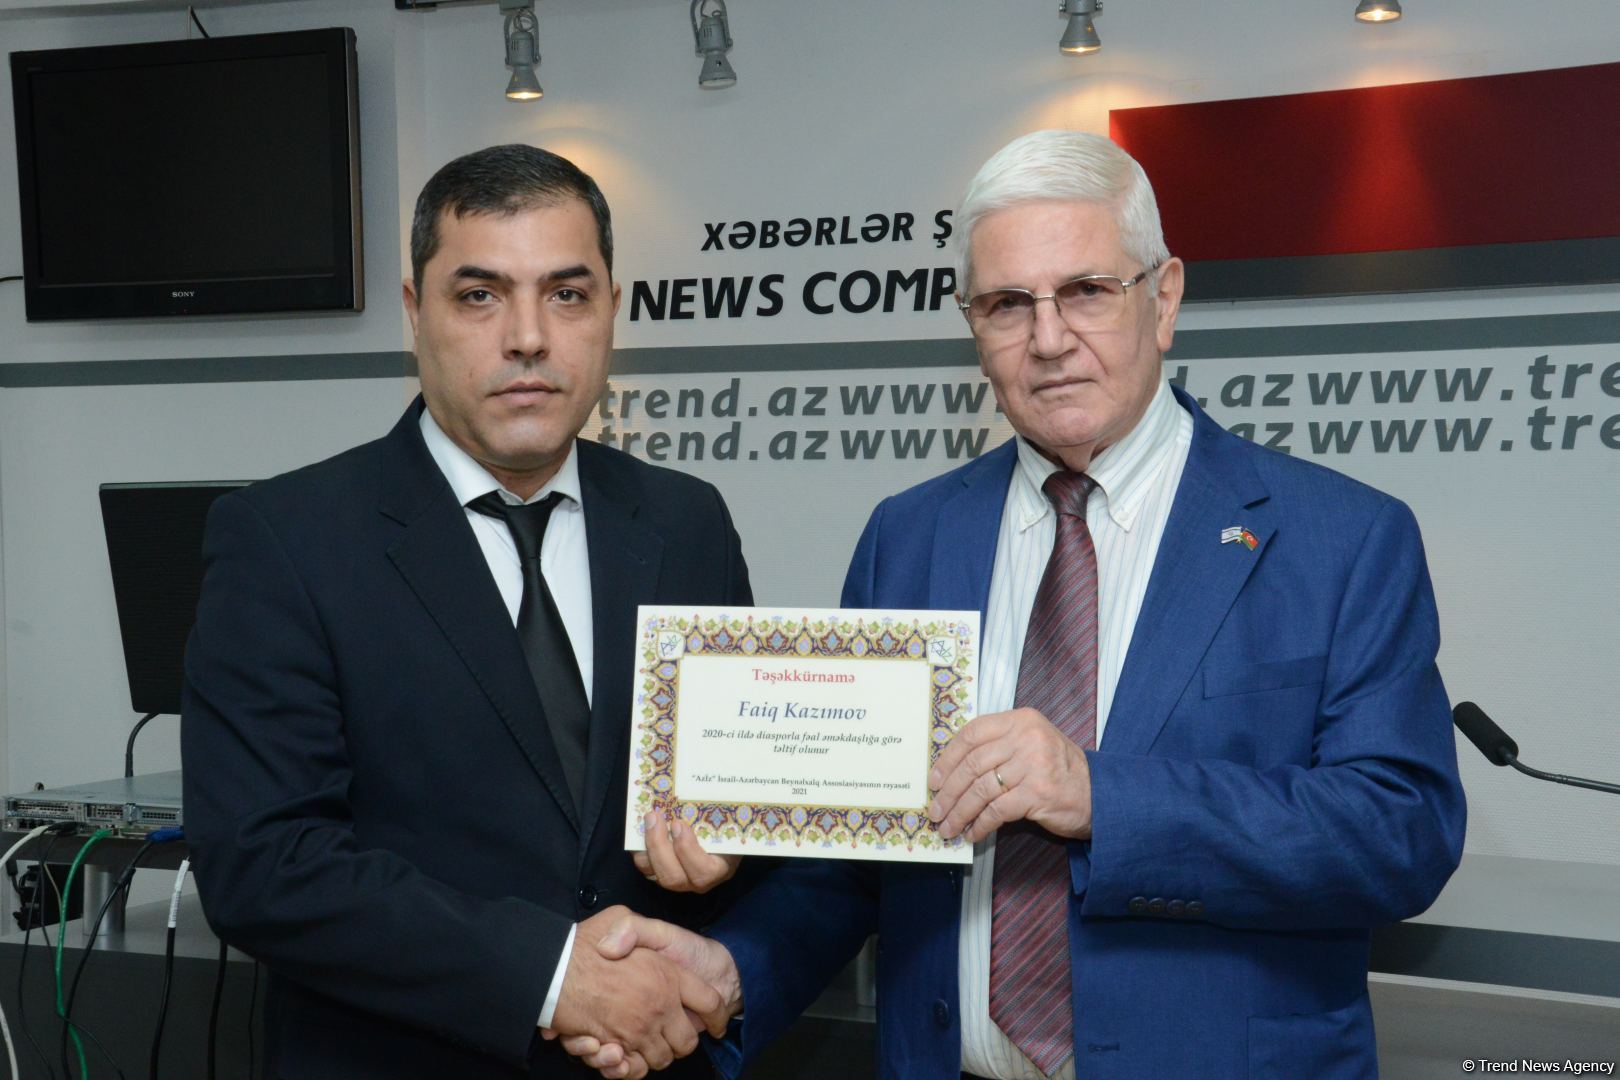 Азербайджанские медийные личности отмечены дипломами Международной Ассоциации Азербайджан-Израиль (ВИДЕО, ФОТО)